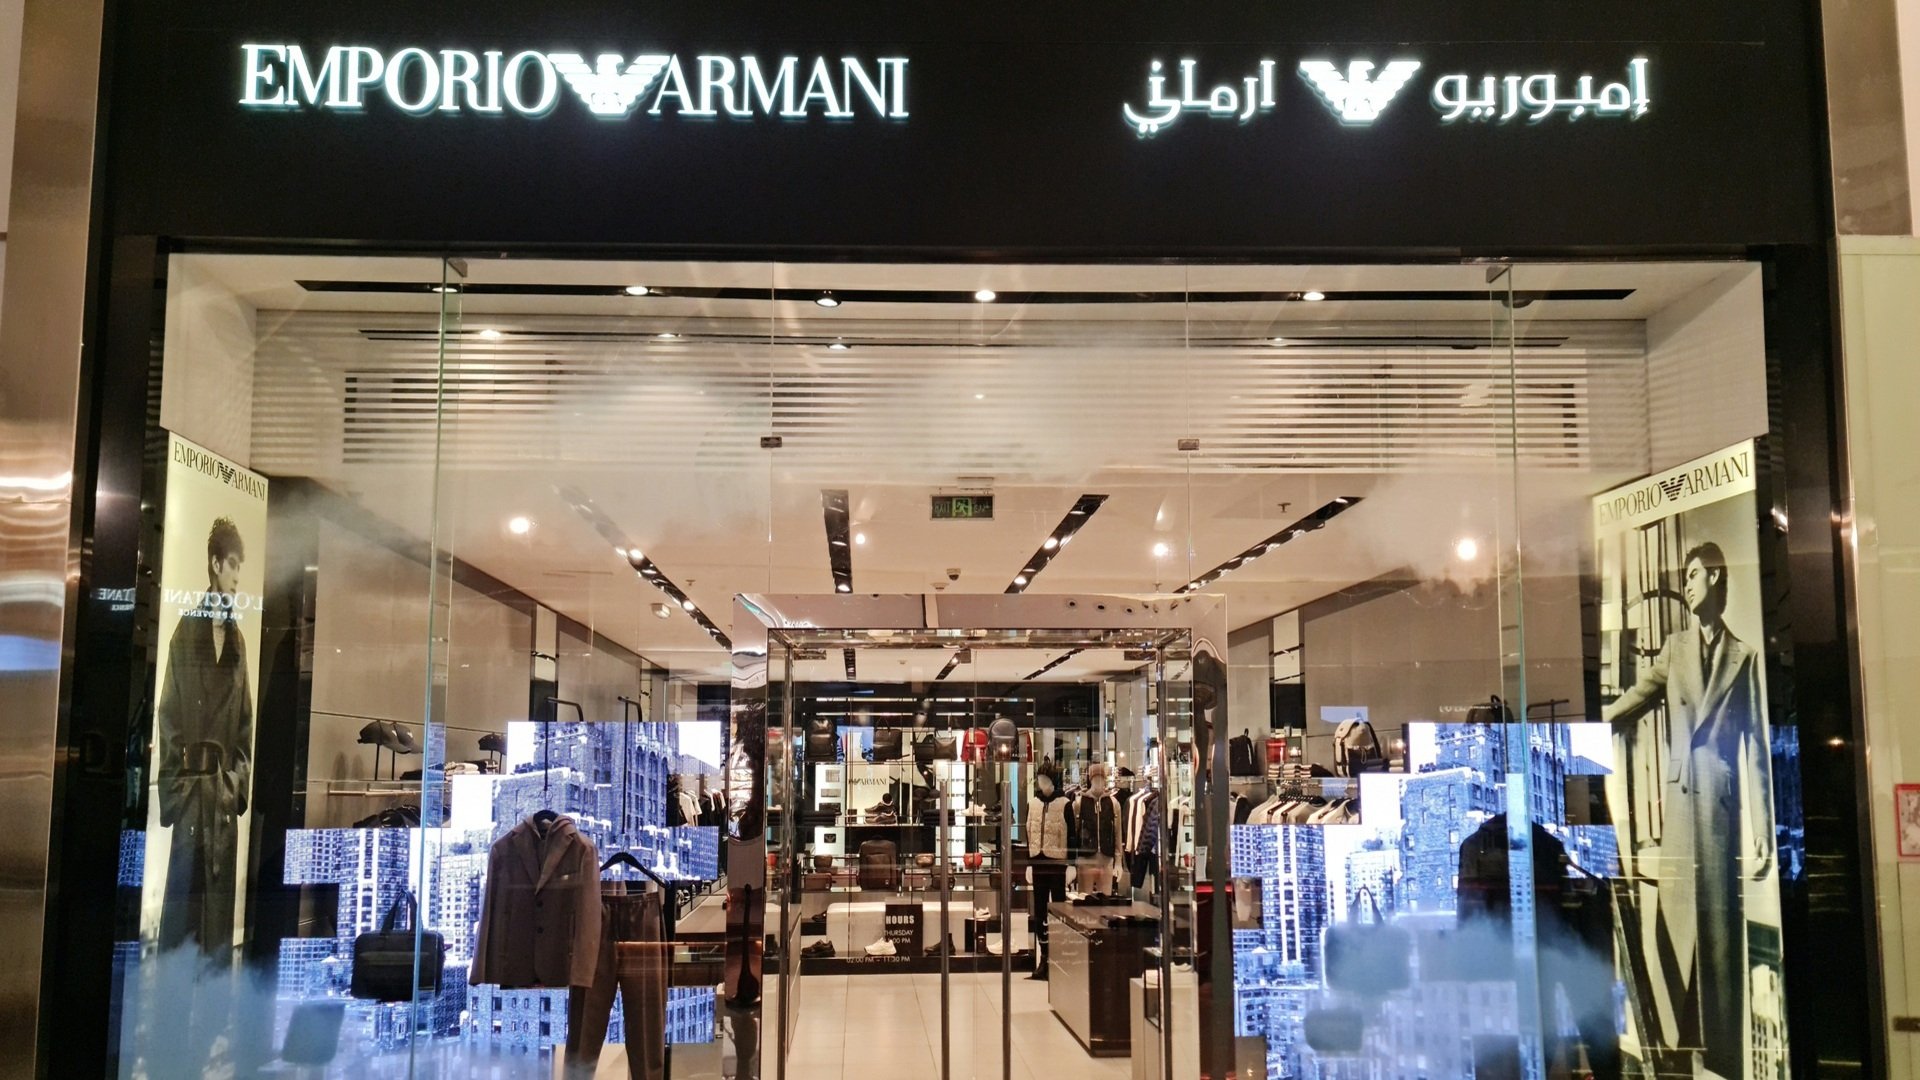 Emporio Armani in Riyadh